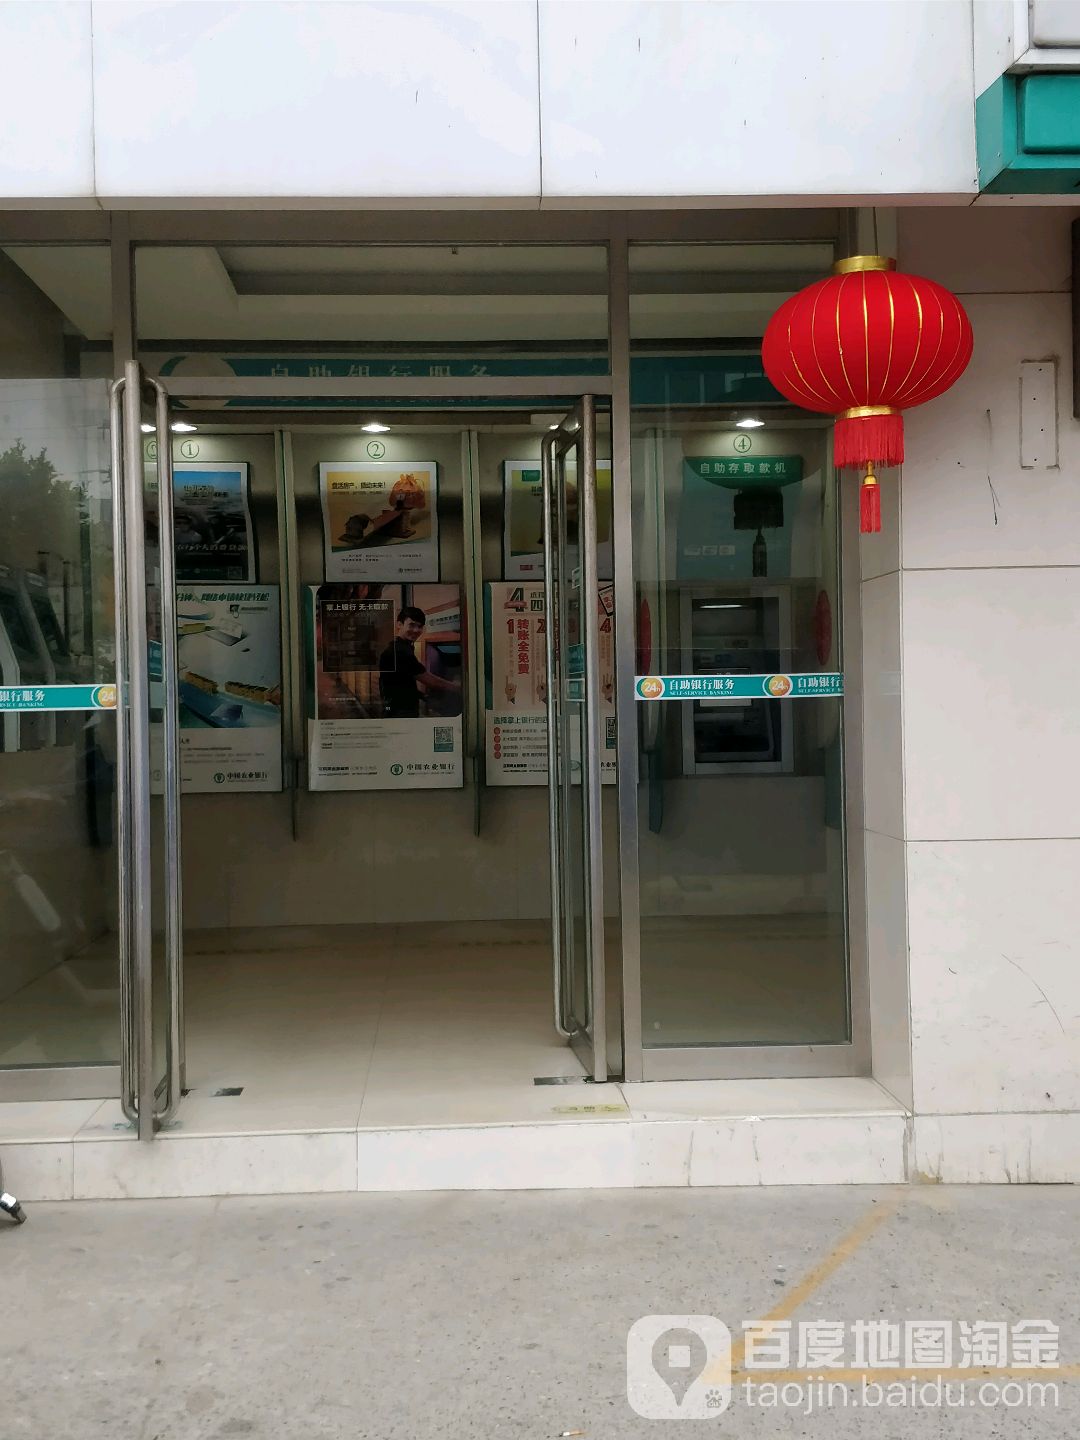 中國農業銀行24小時自助銀行(南寧環球時代城支行)